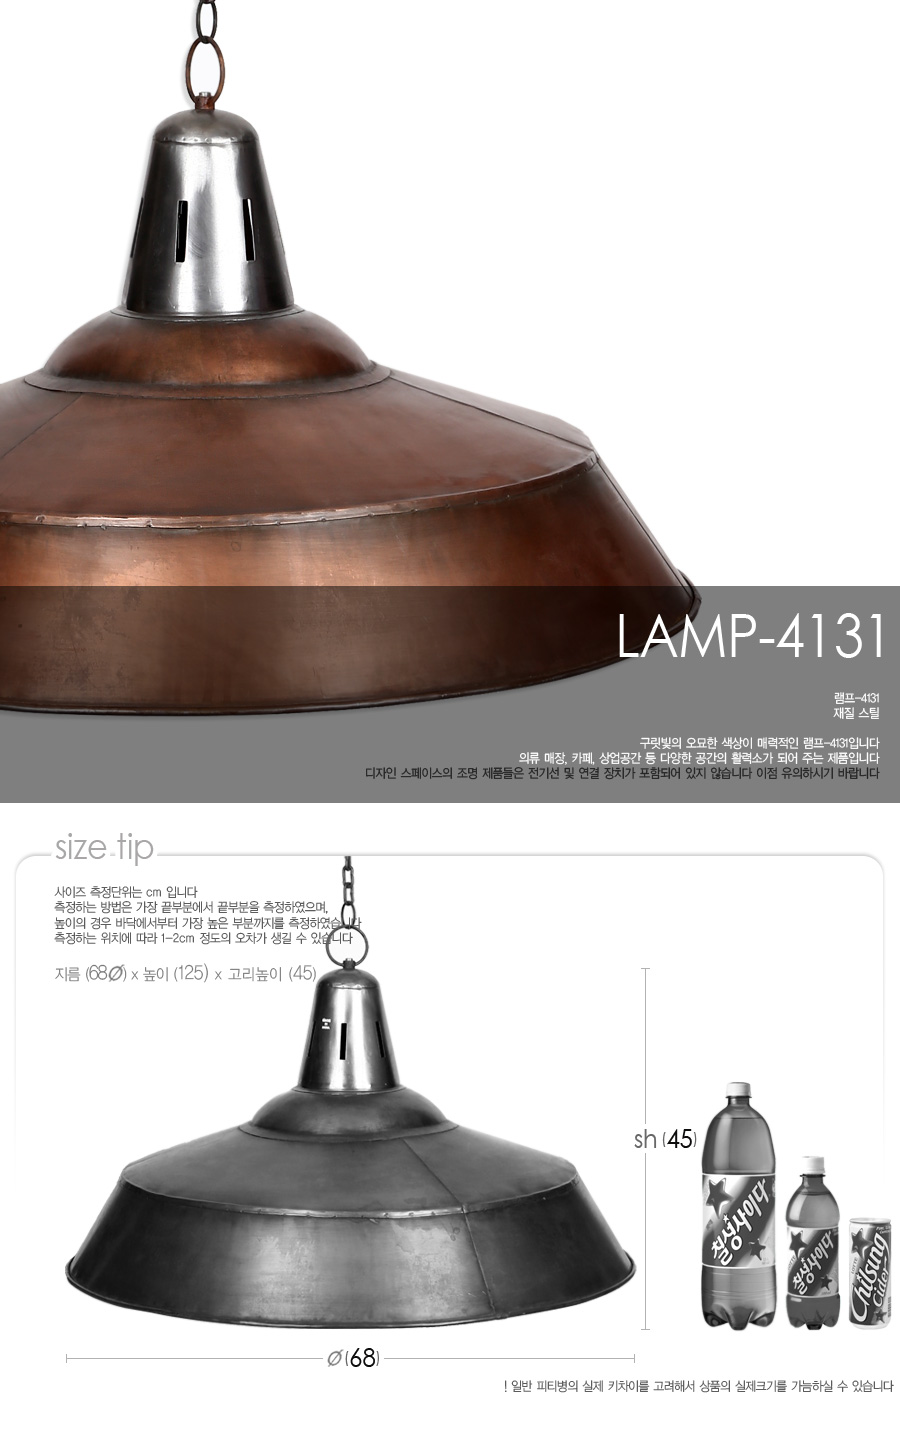 lamp-4131_01.jpg